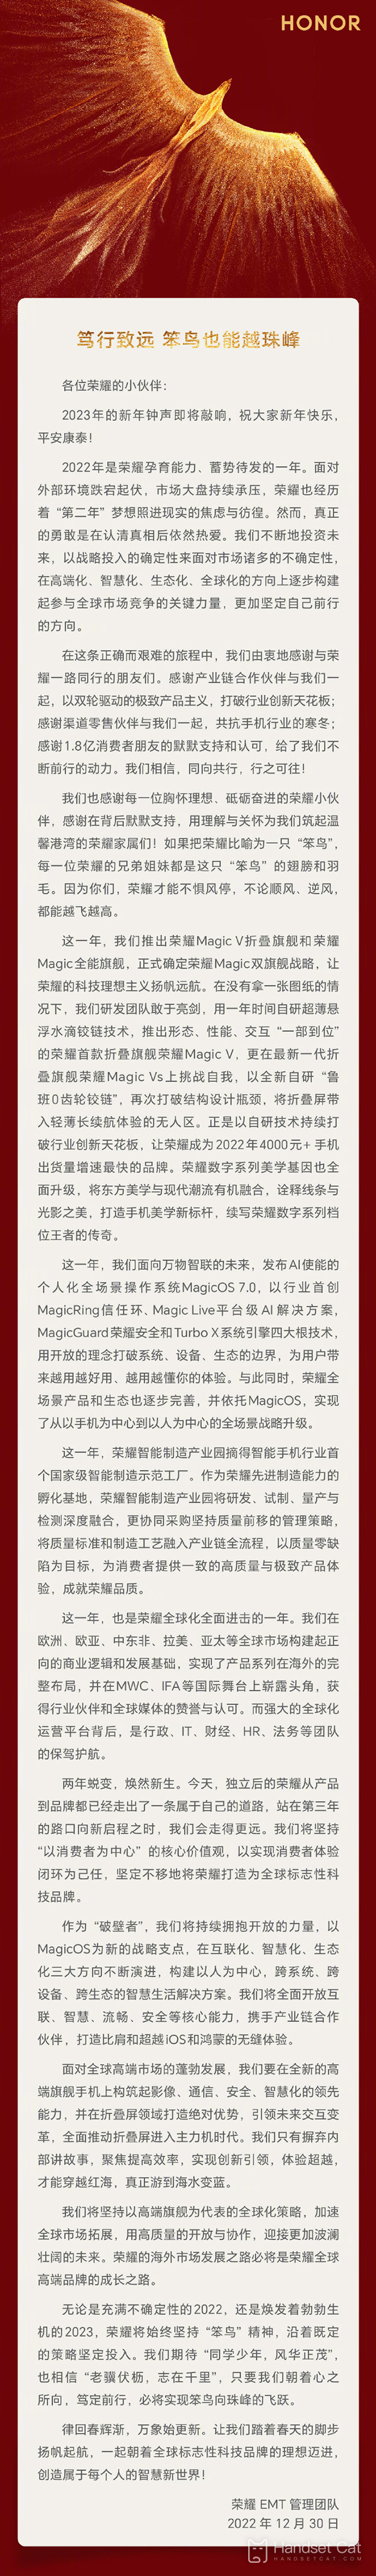 ऑनर झाओ मिंग का आधिकारिक नए साल का संदेश: नए साल में, हाई-एंड फ्लैगशिप एक ही समय में इमेजिंग, संचार और अन्य पहलुओं पर ध्यान केंद्रित करेंगे!